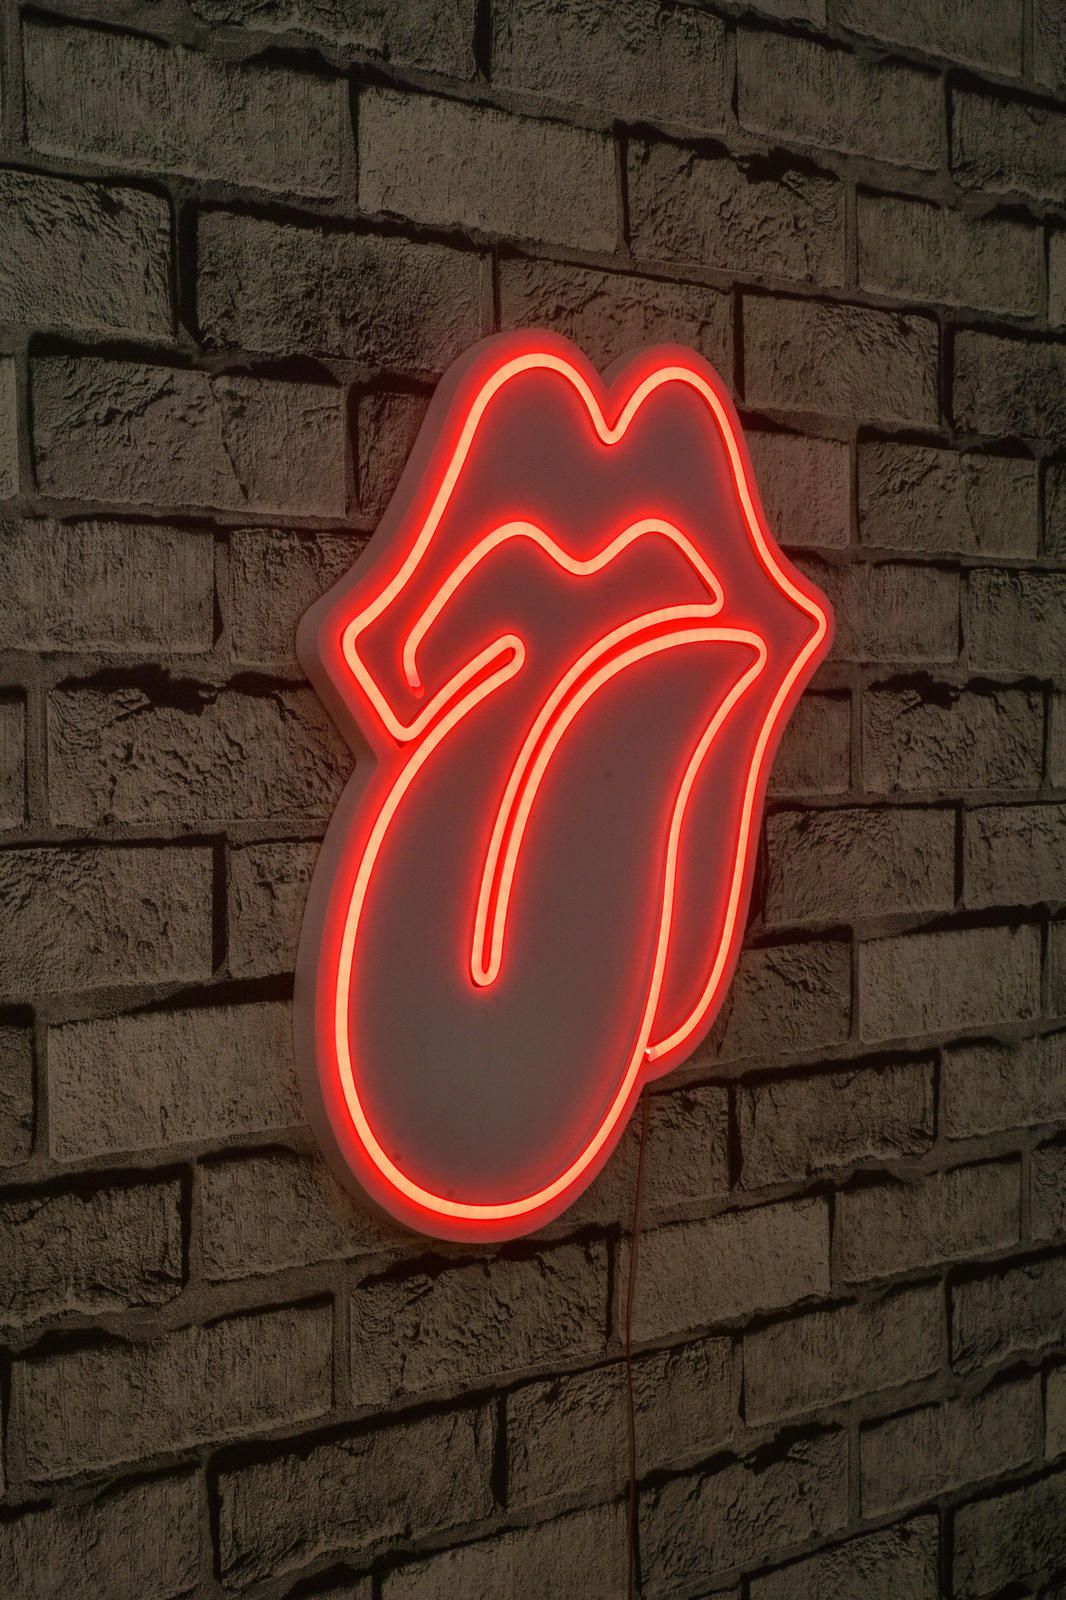 Aldo Světelná dekorace na zeď The Rolling Stones  - Nábytek ALDO